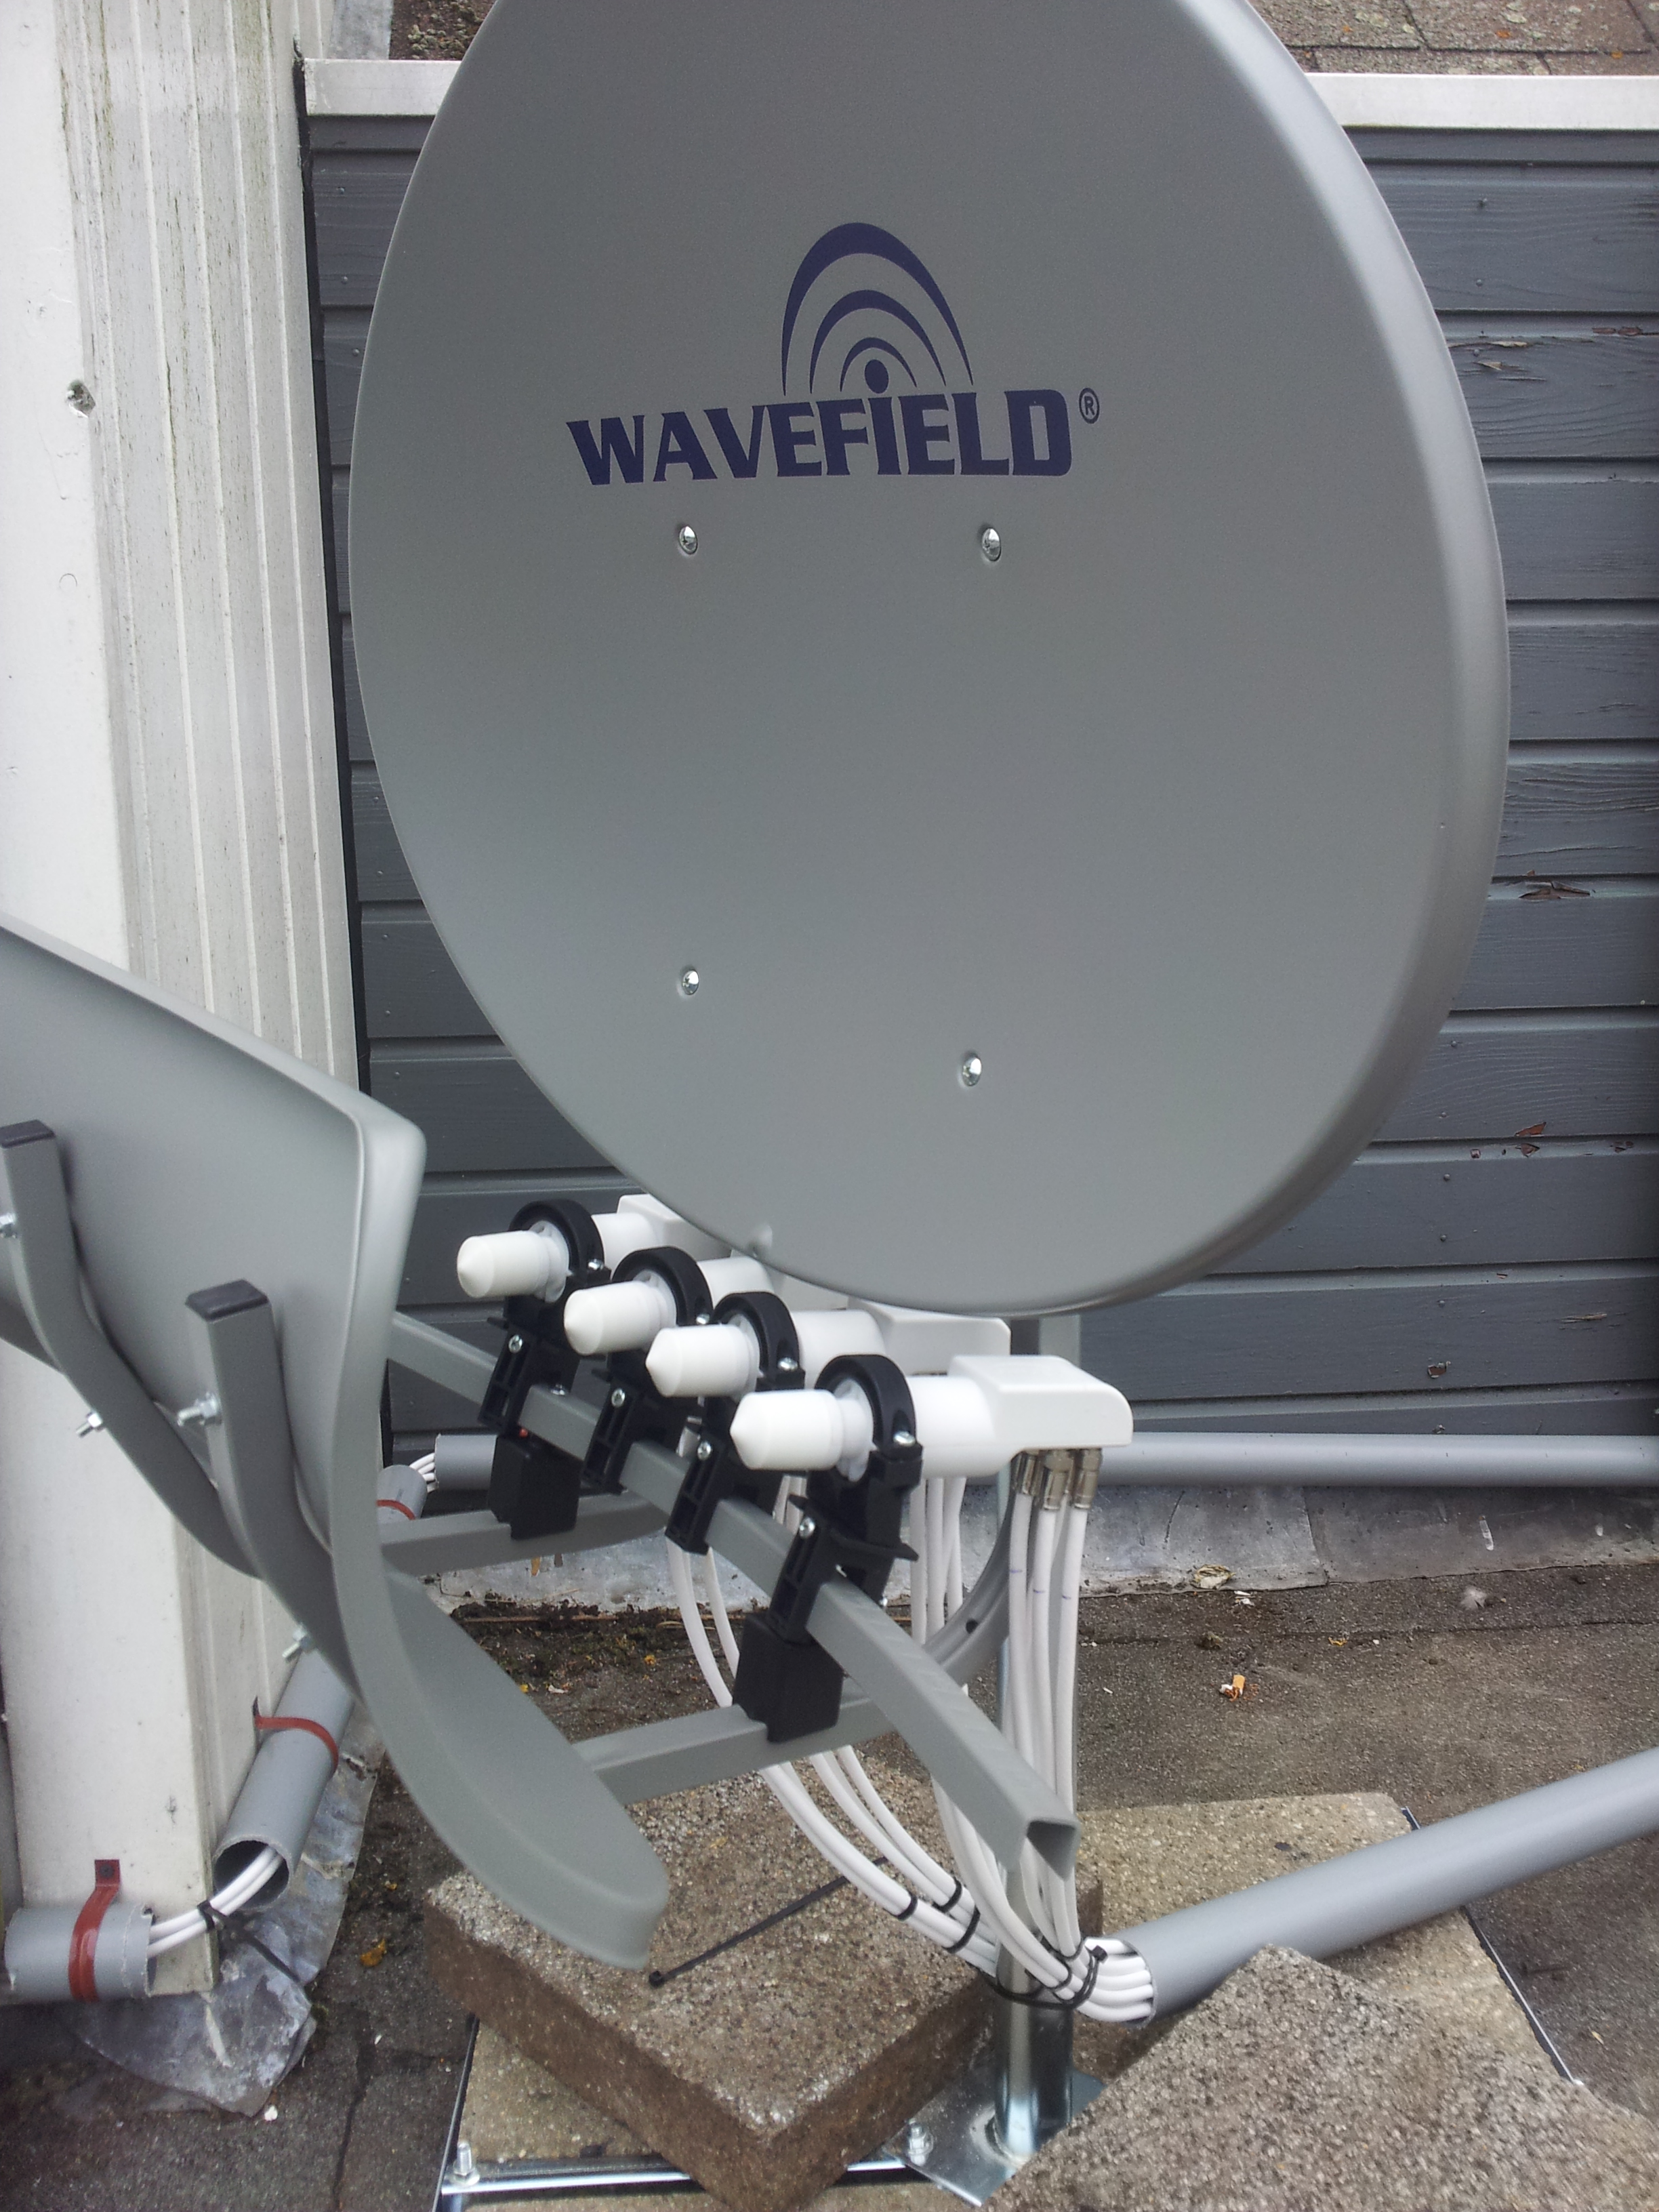 Wavefield T55 multi satellietschotel; ontvangst van 4 satellieten, te weten de Astra en Hotbird satelliet